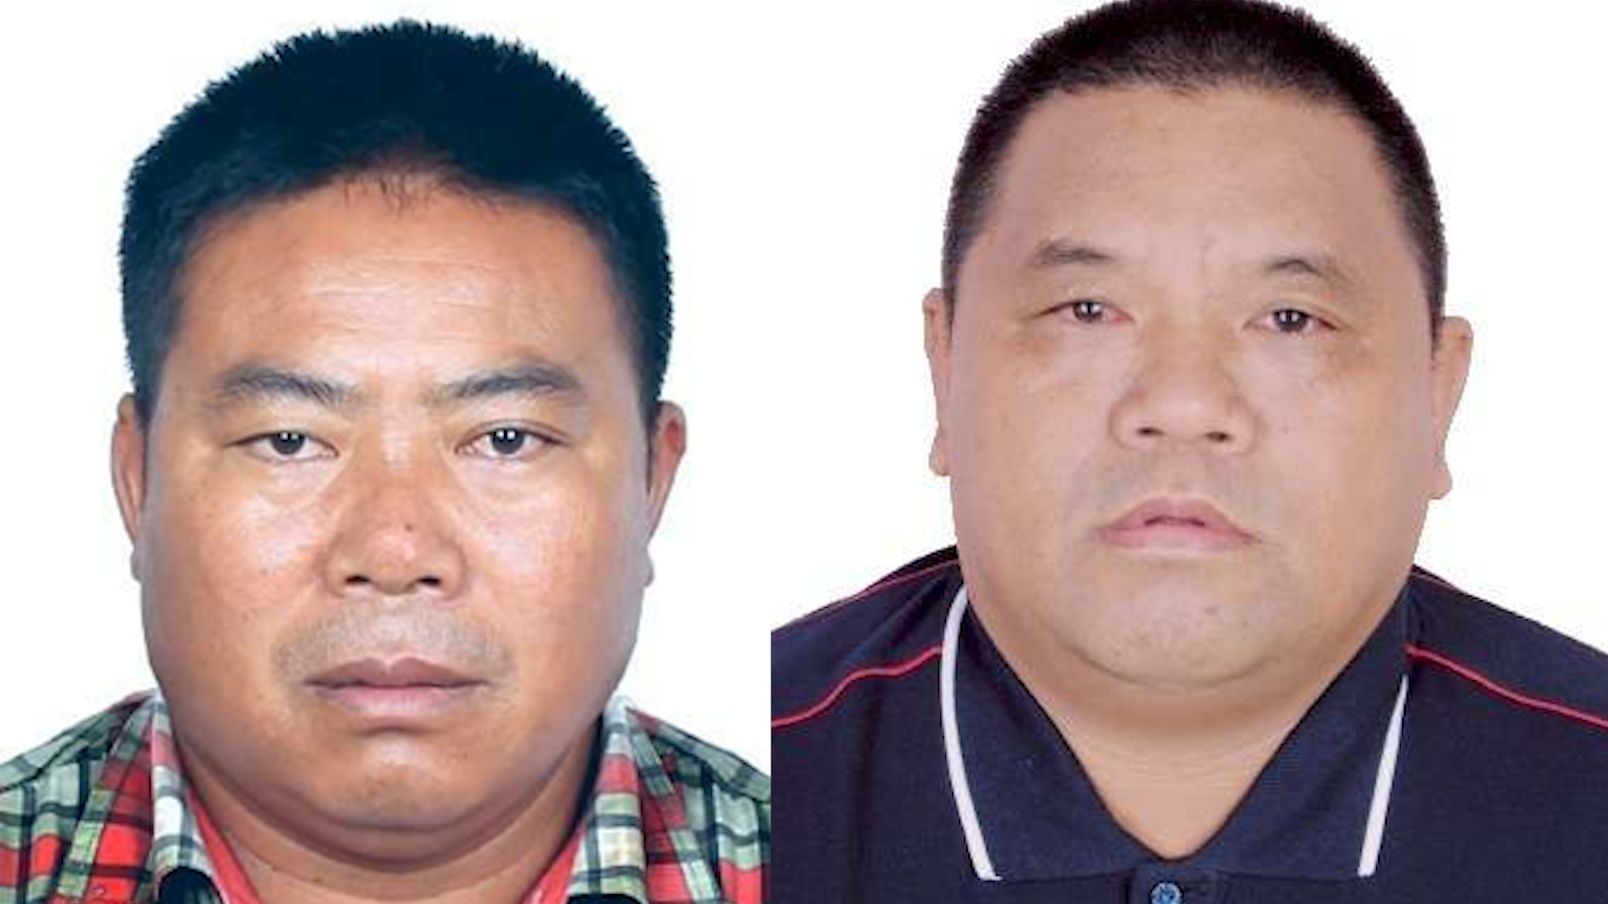 公安机关公开通缉2名缅北电诈犯罪集团重要头目 通缉犯照片公布